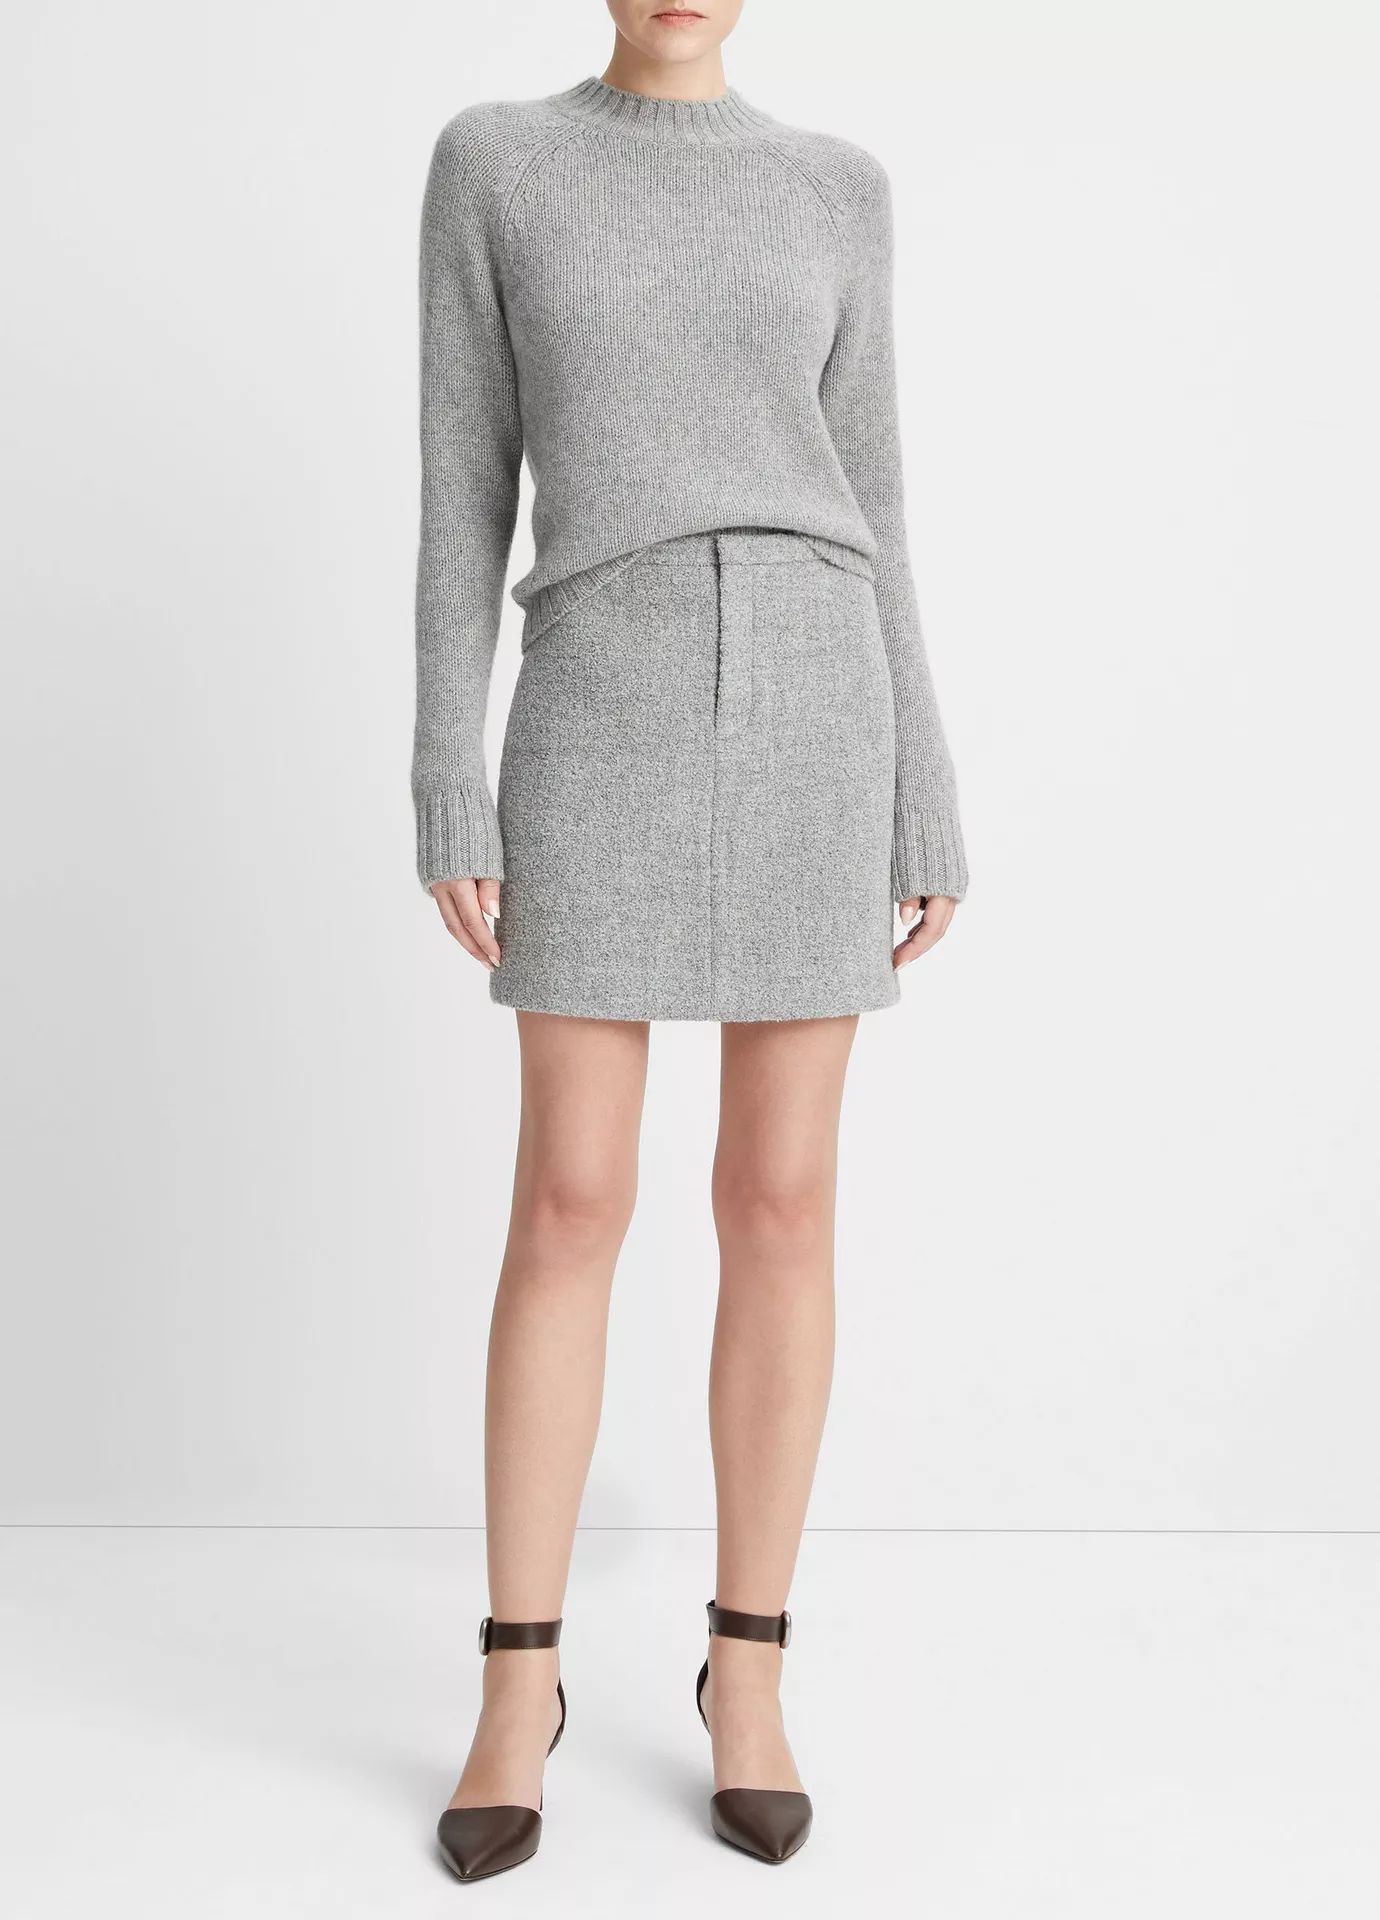 Pebble-Textured Mini Skirt | Vince LLC